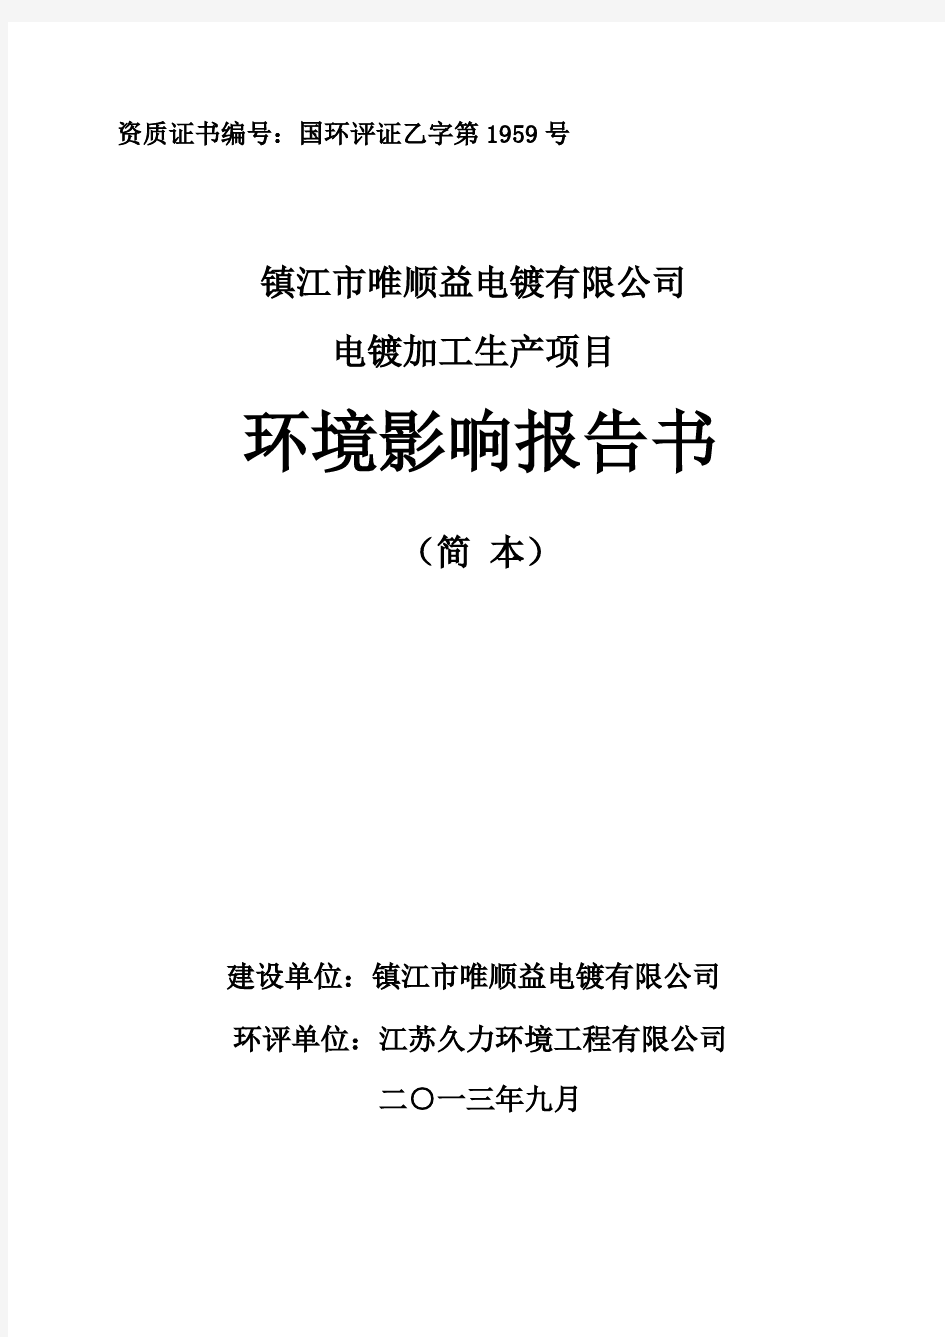 镇江市唯顺益电镀有限公司电镀加工项目环境影响评价报告书